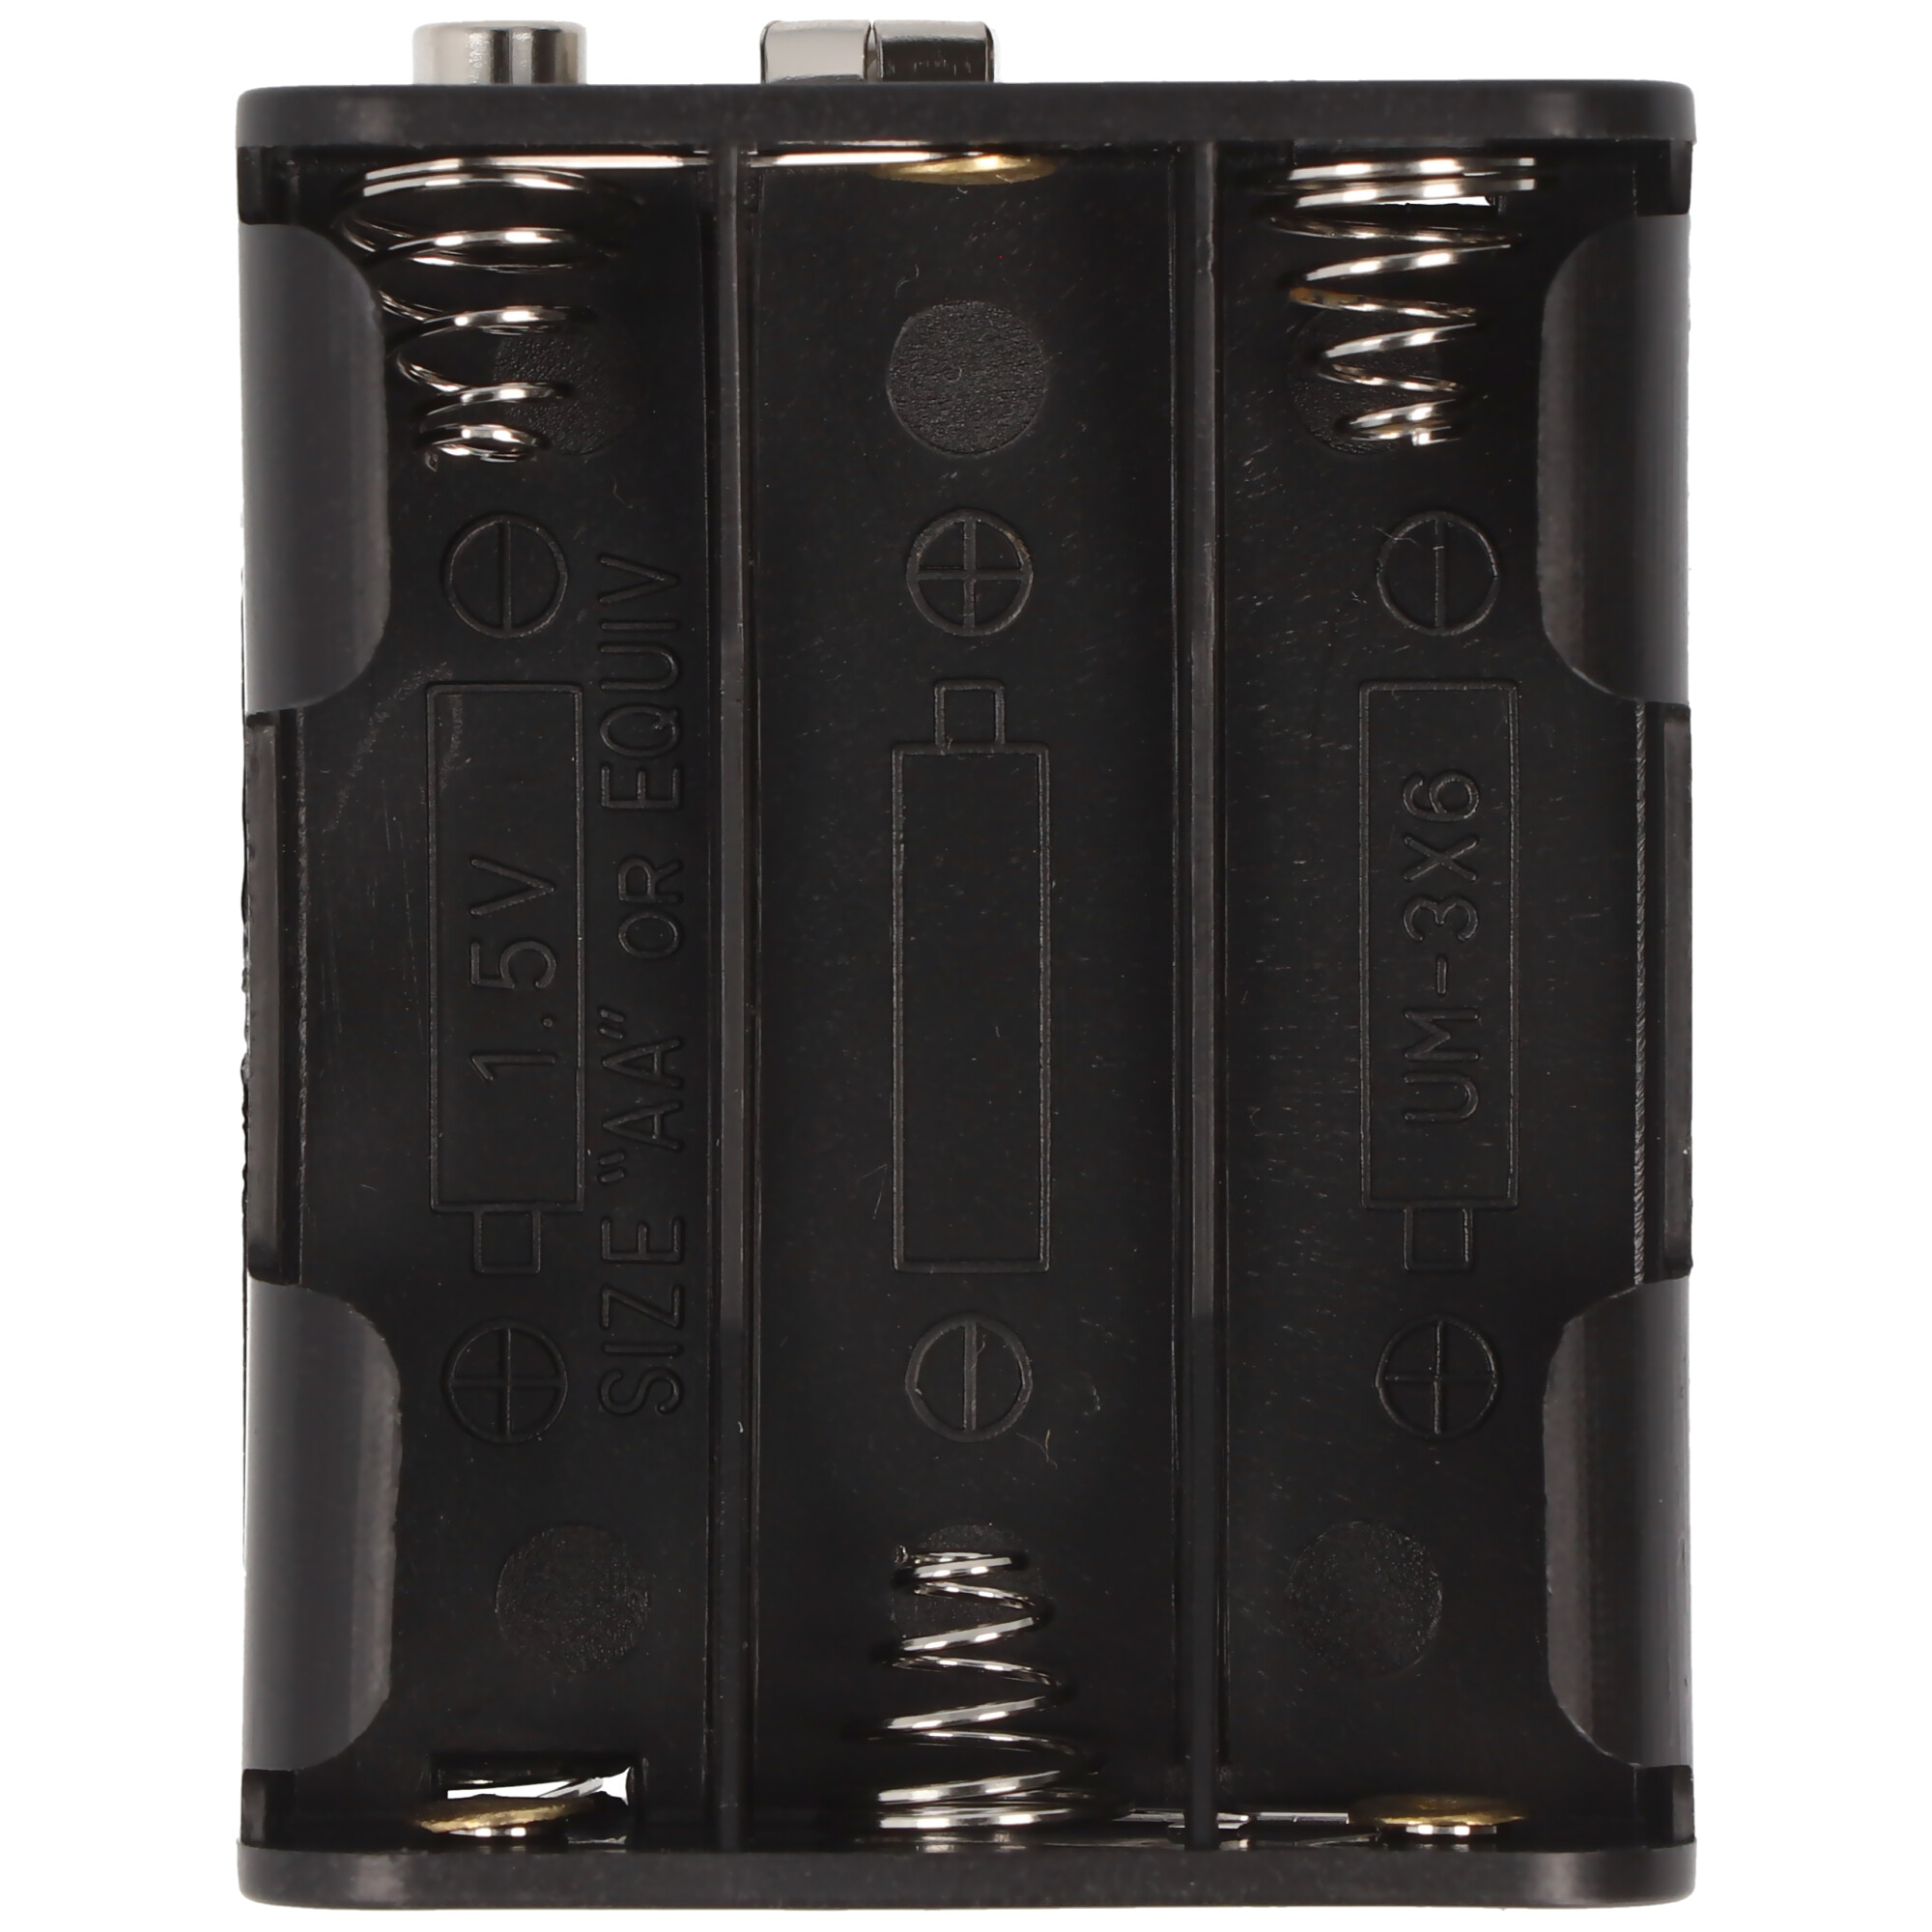 Batteriehalter für 6x Mignon mit Druckknopf